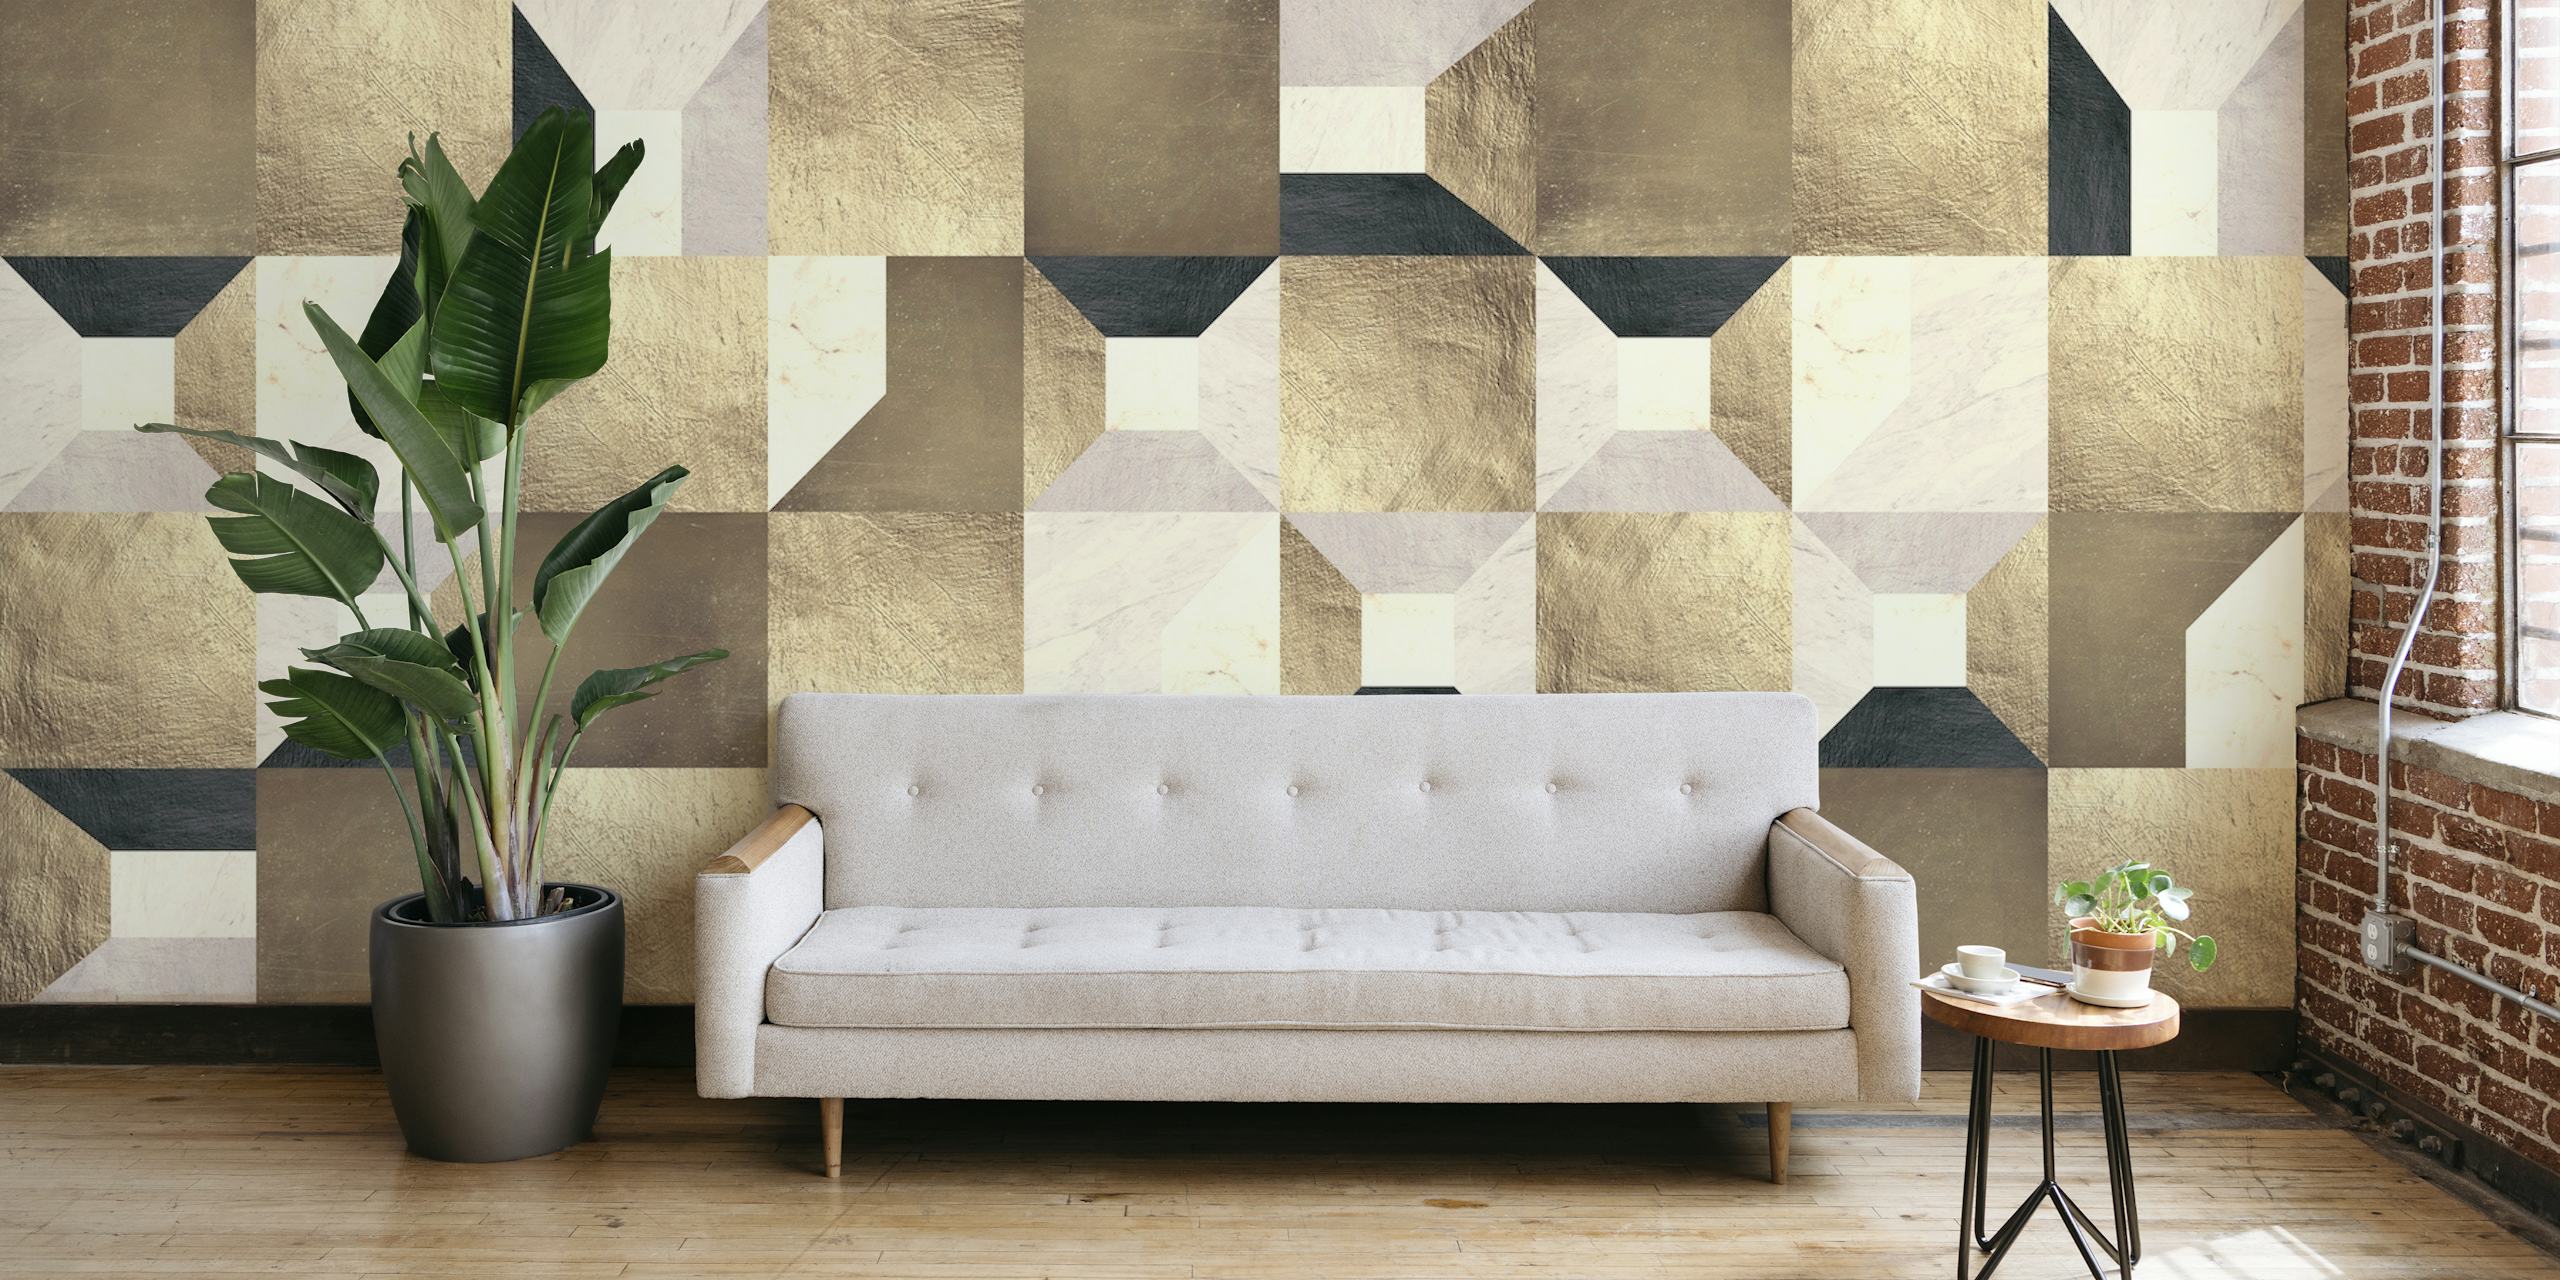 Fotomural vinílico de parede geométrico de quadrados dourados com uma mistura de tons de bege, creme e dourado formando um padrão elegante.